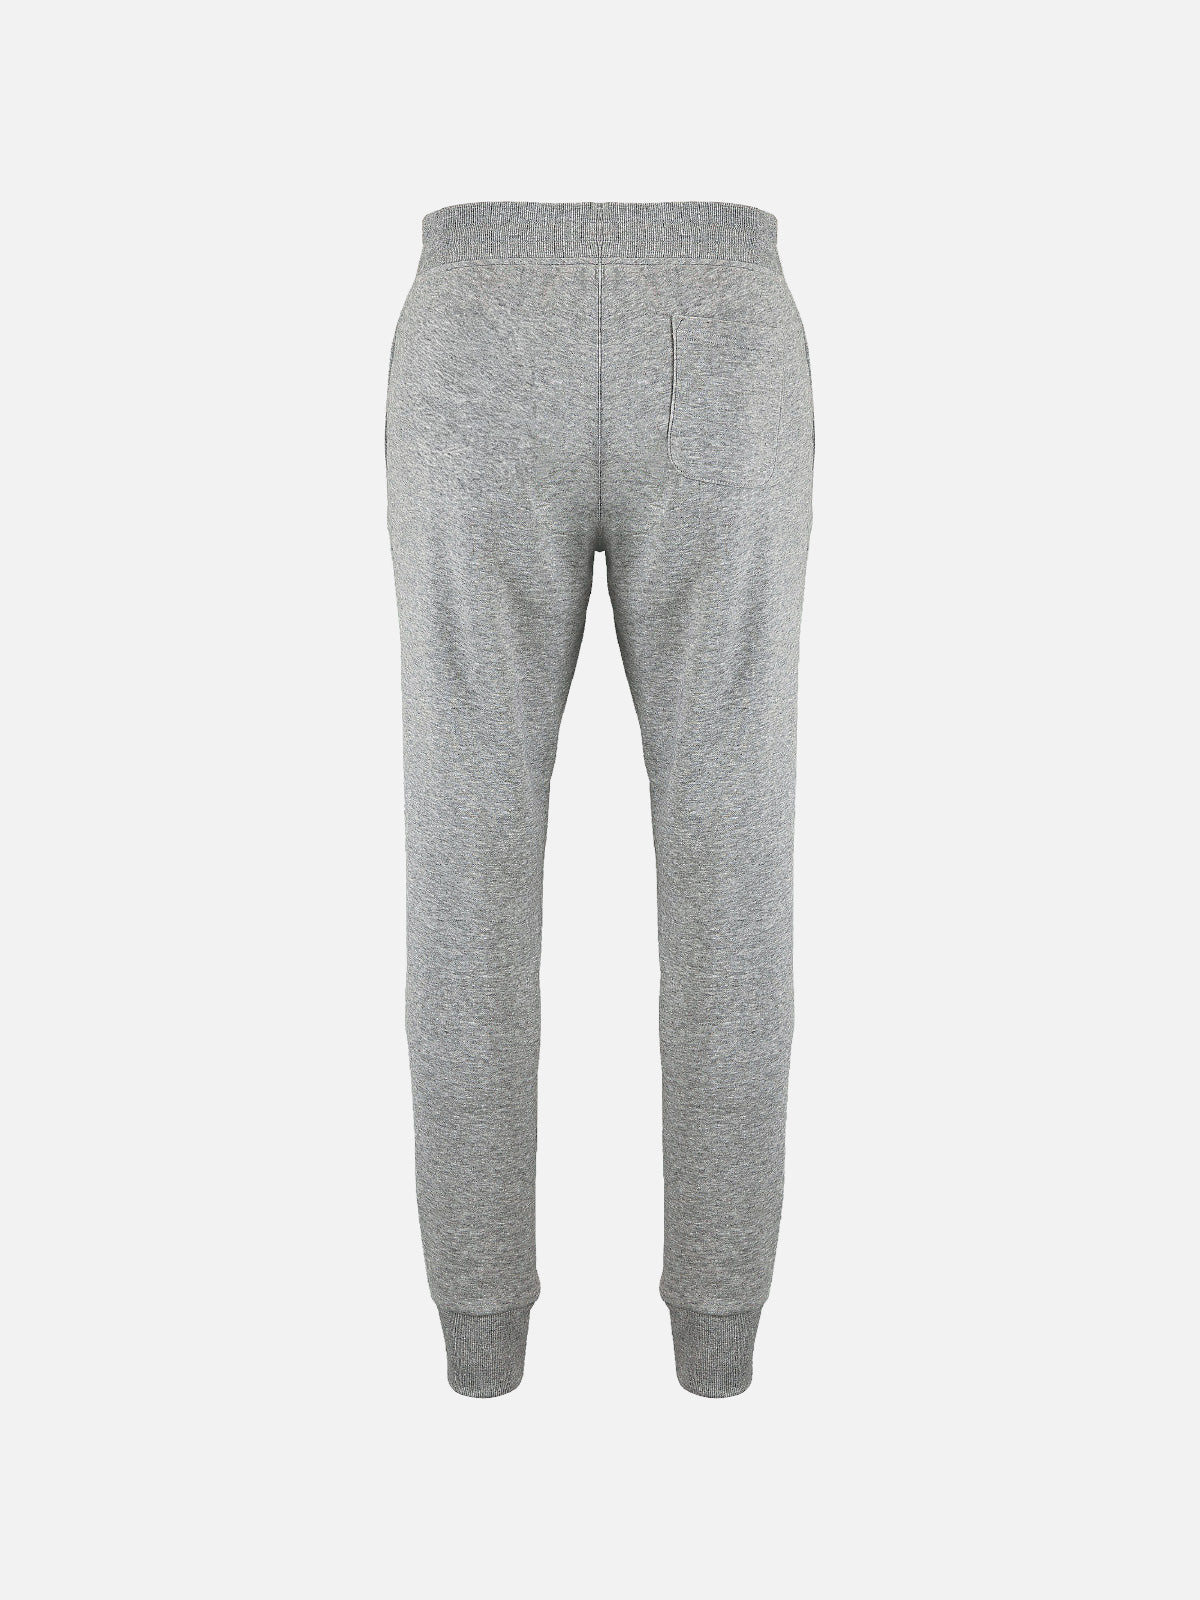 Iconic Men'S Pants - Grey